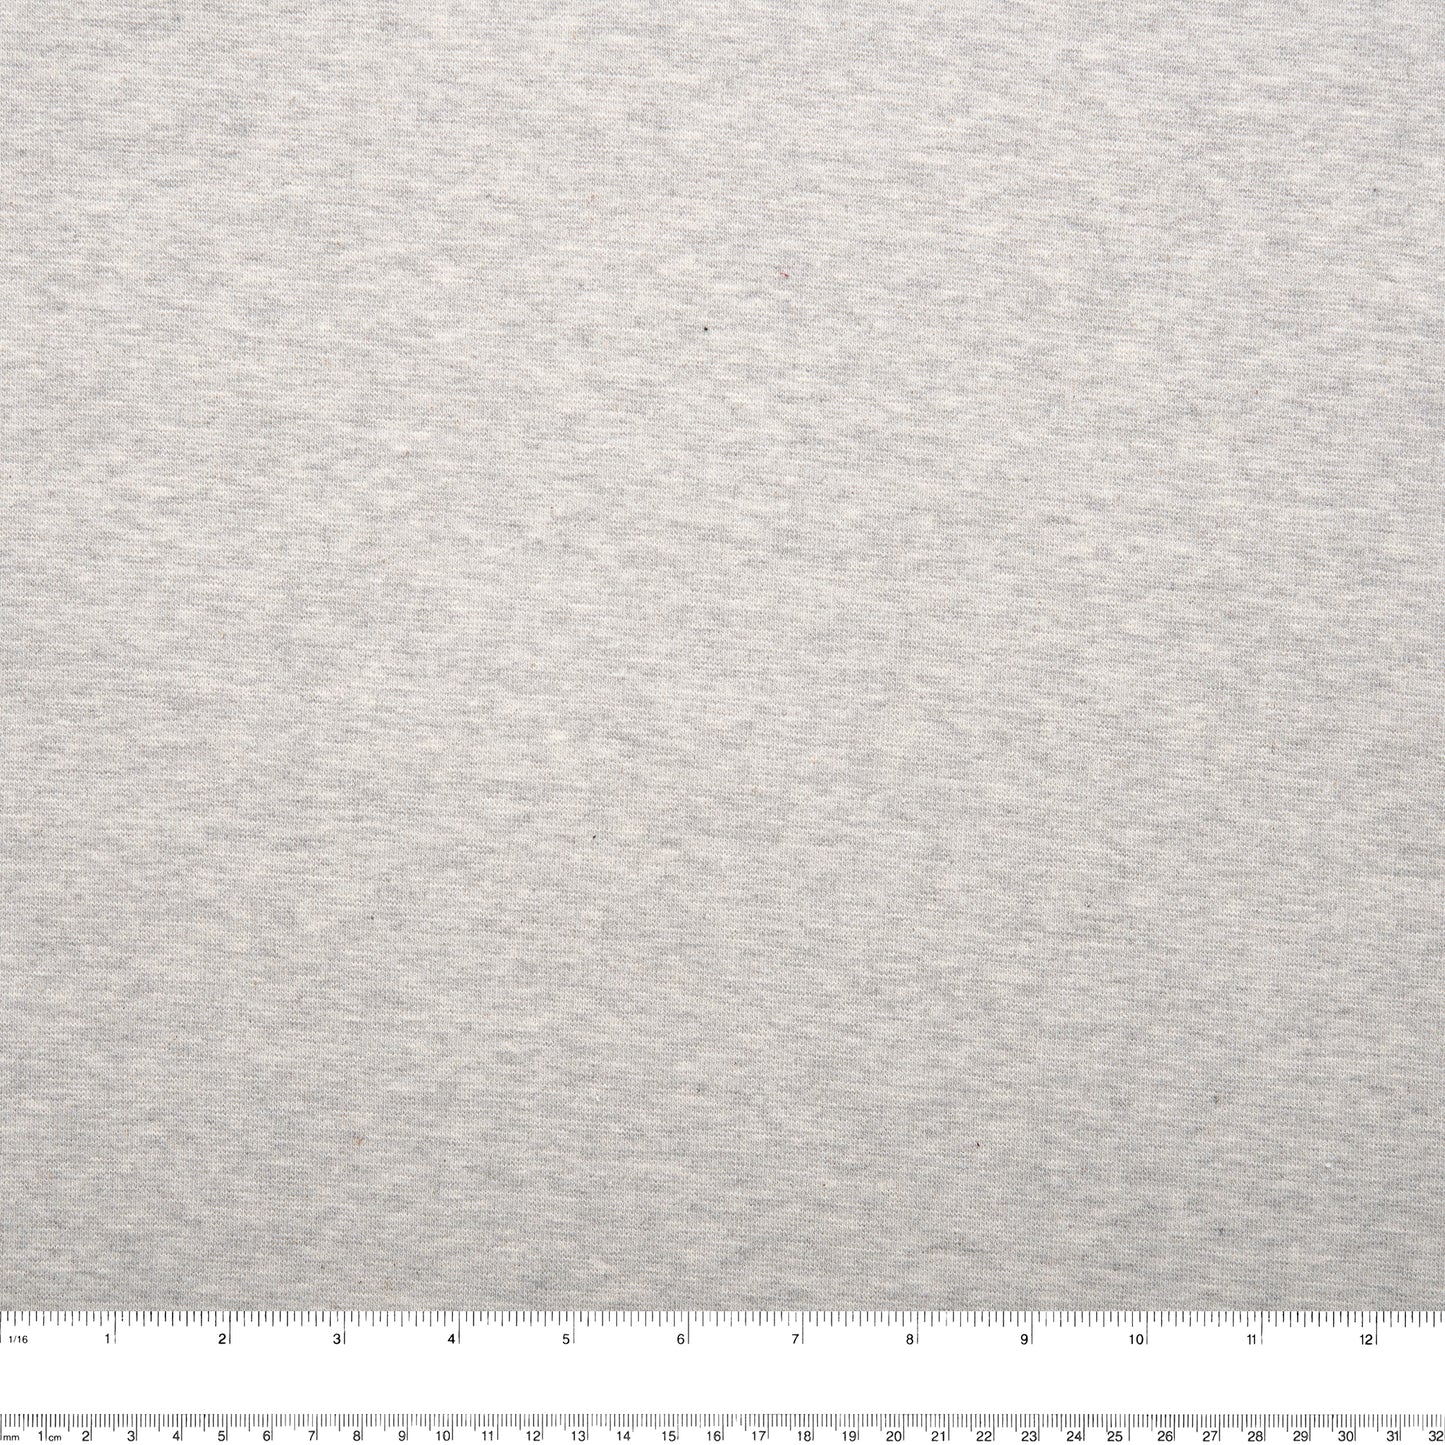 1 x 1 Tubular Rib Knit - Canadian - Gray